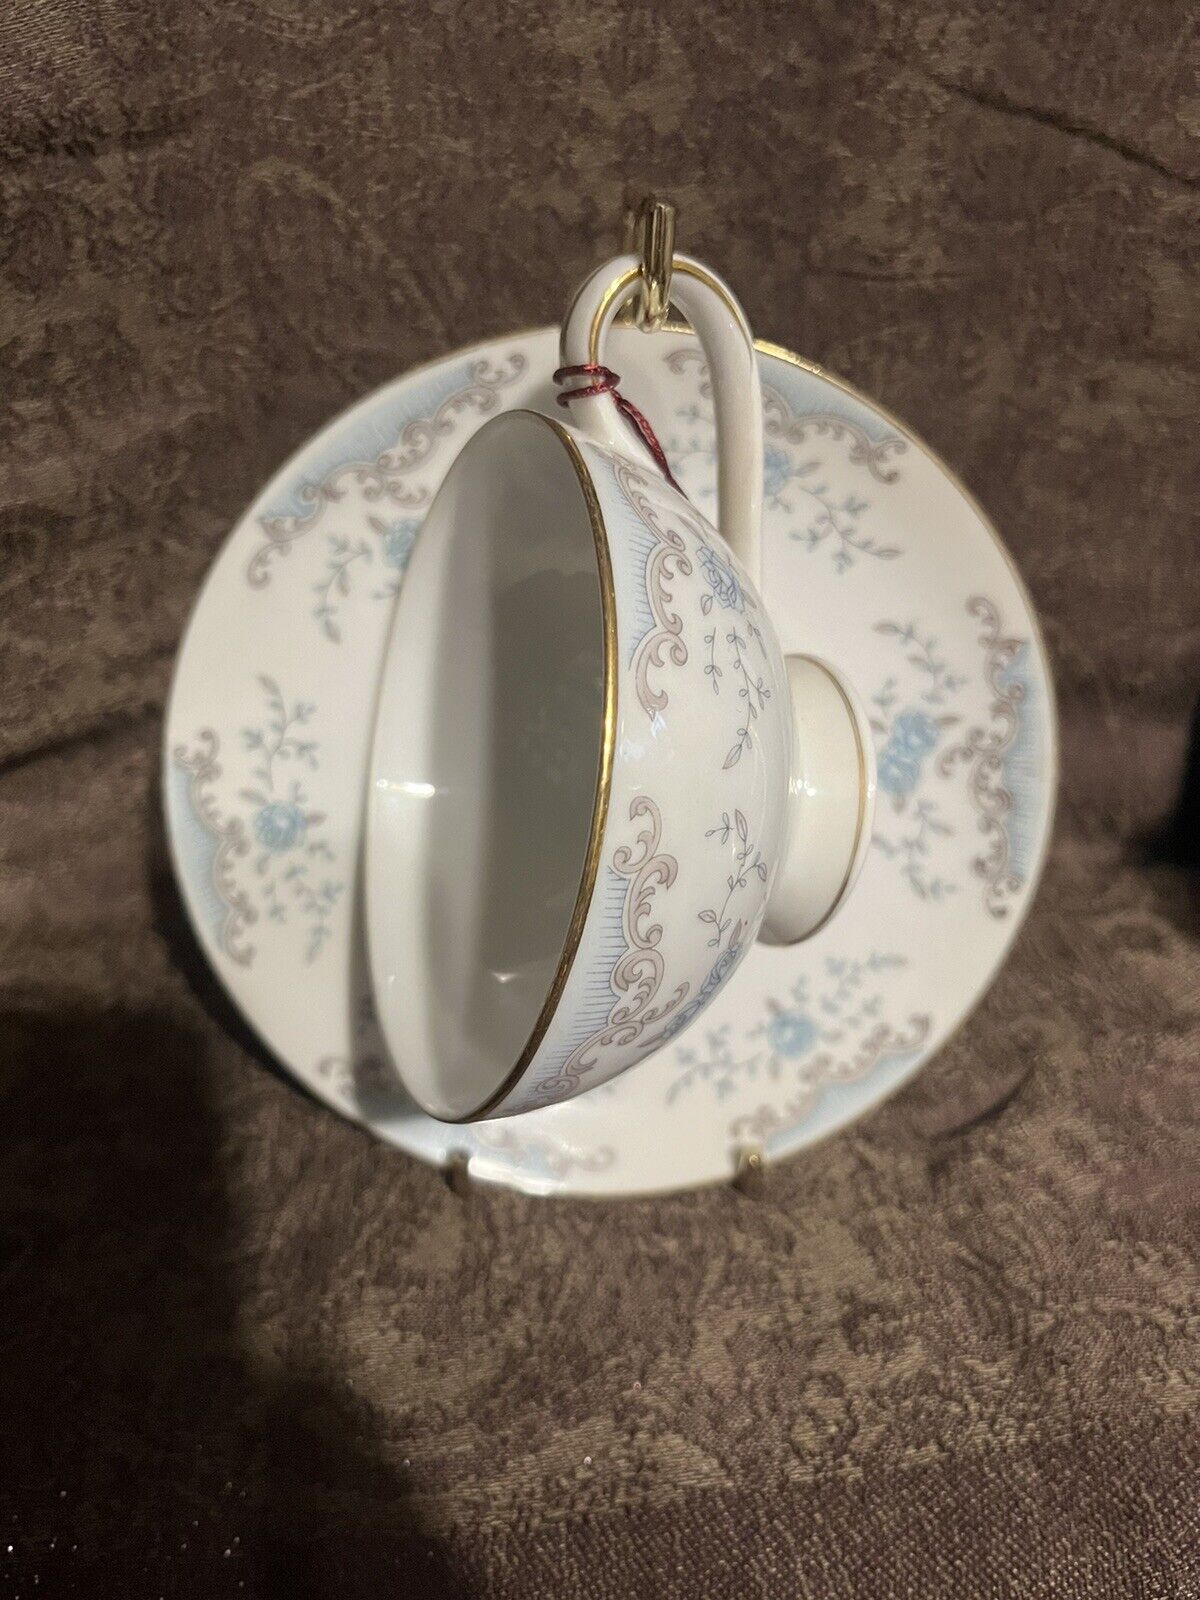 Vintage Imperial China Porcelain Wm Dalton Seville Tea Cup/Saucer